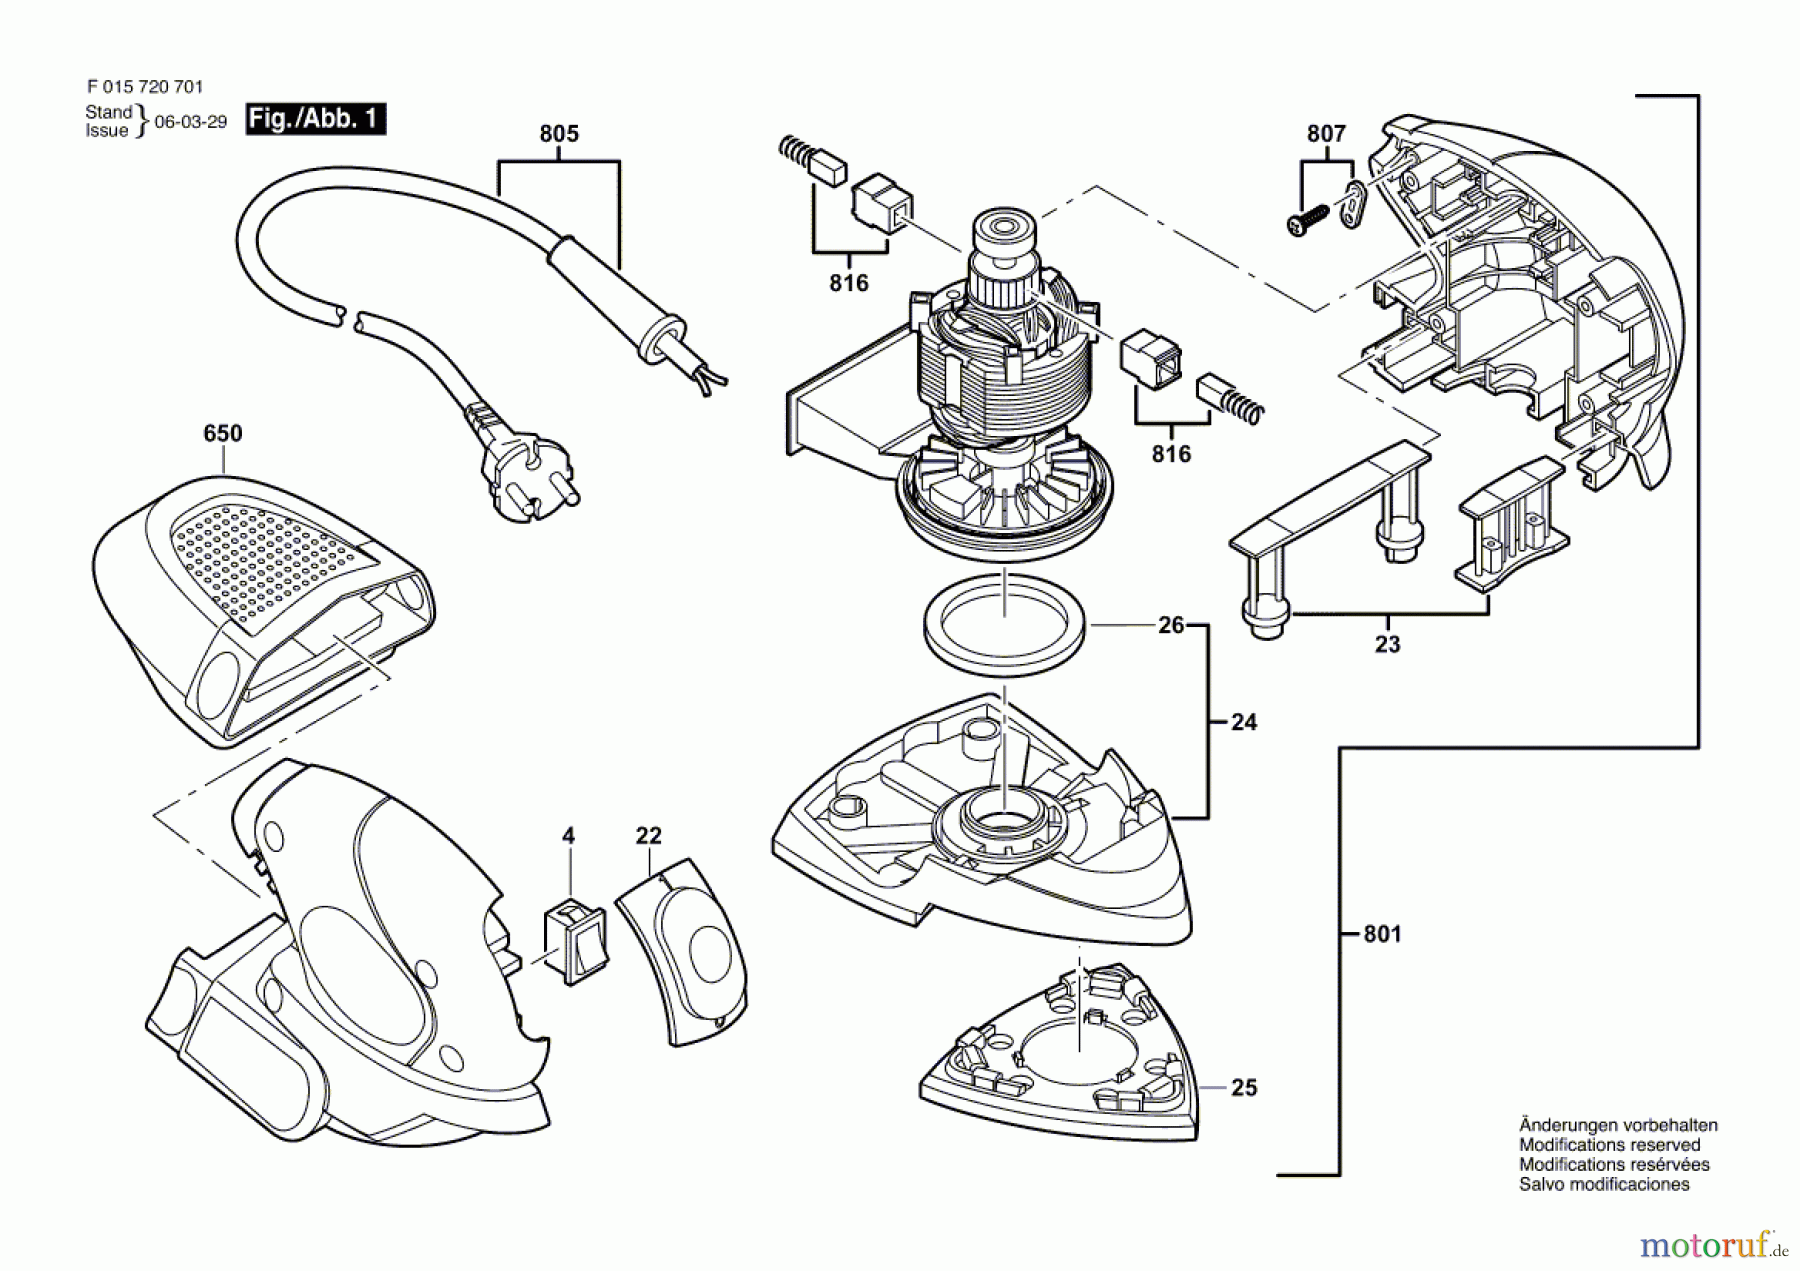  Bosch Werkzeug Hw-Deltaschleifer 7207 Seite 1